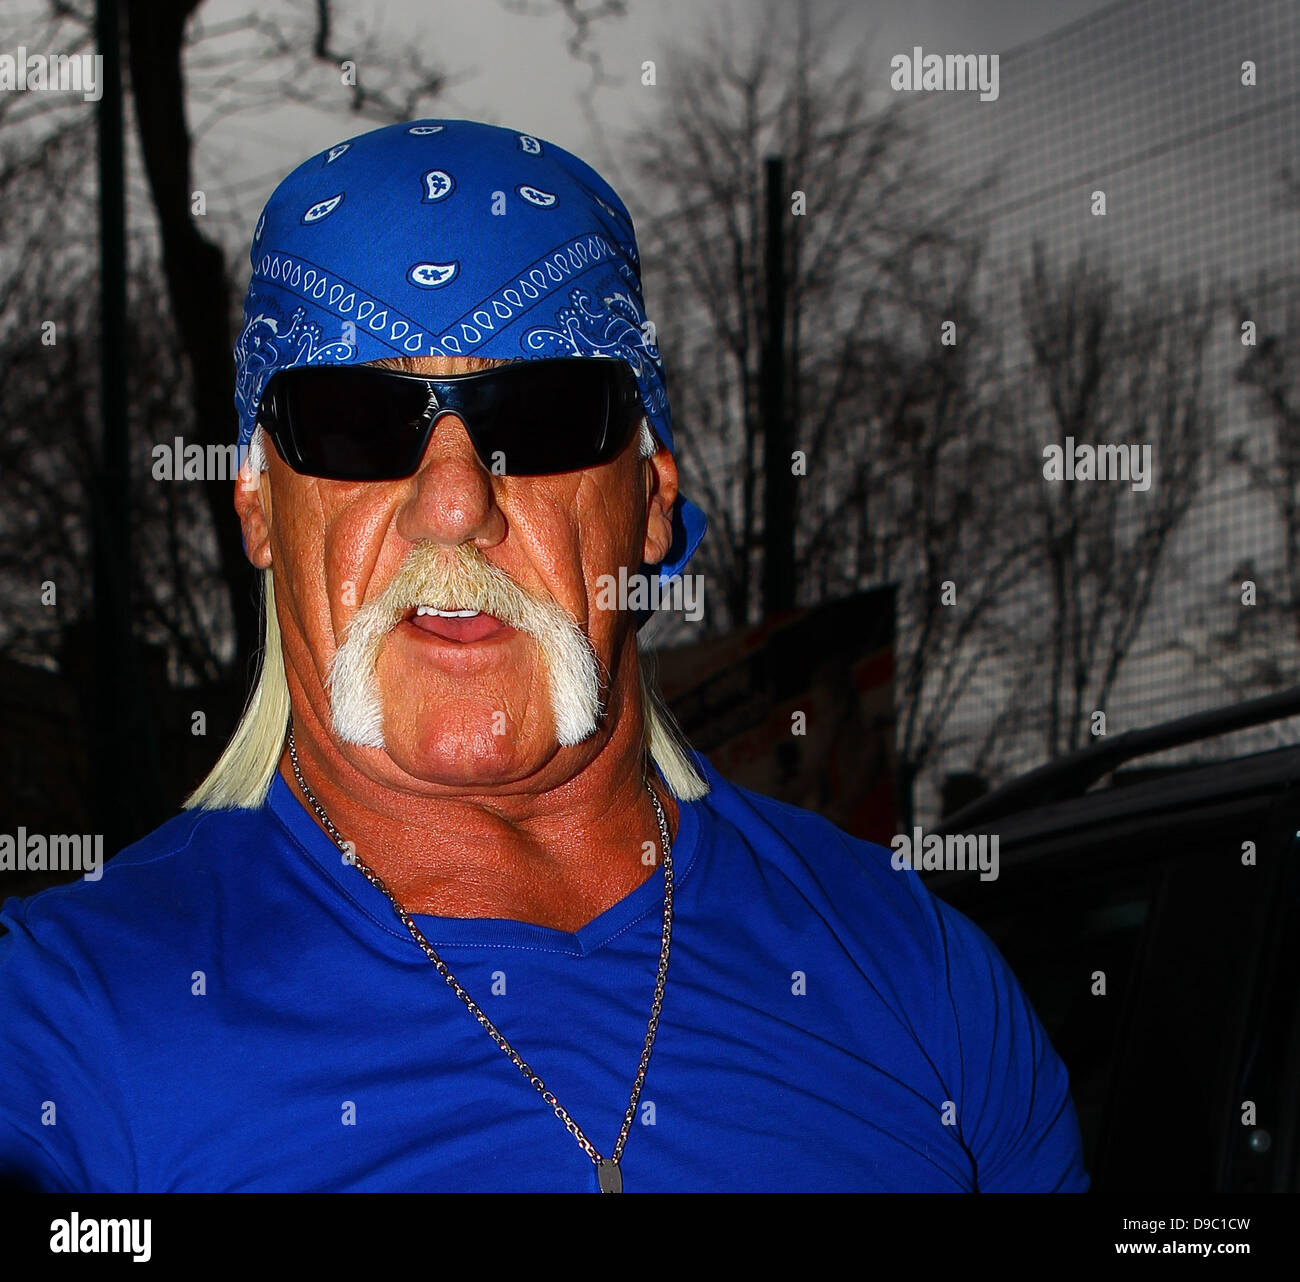 Hulk Hogan arrivant à talksport studios de radio Londres, Angleterre - 25.01.12 Banque D'Images